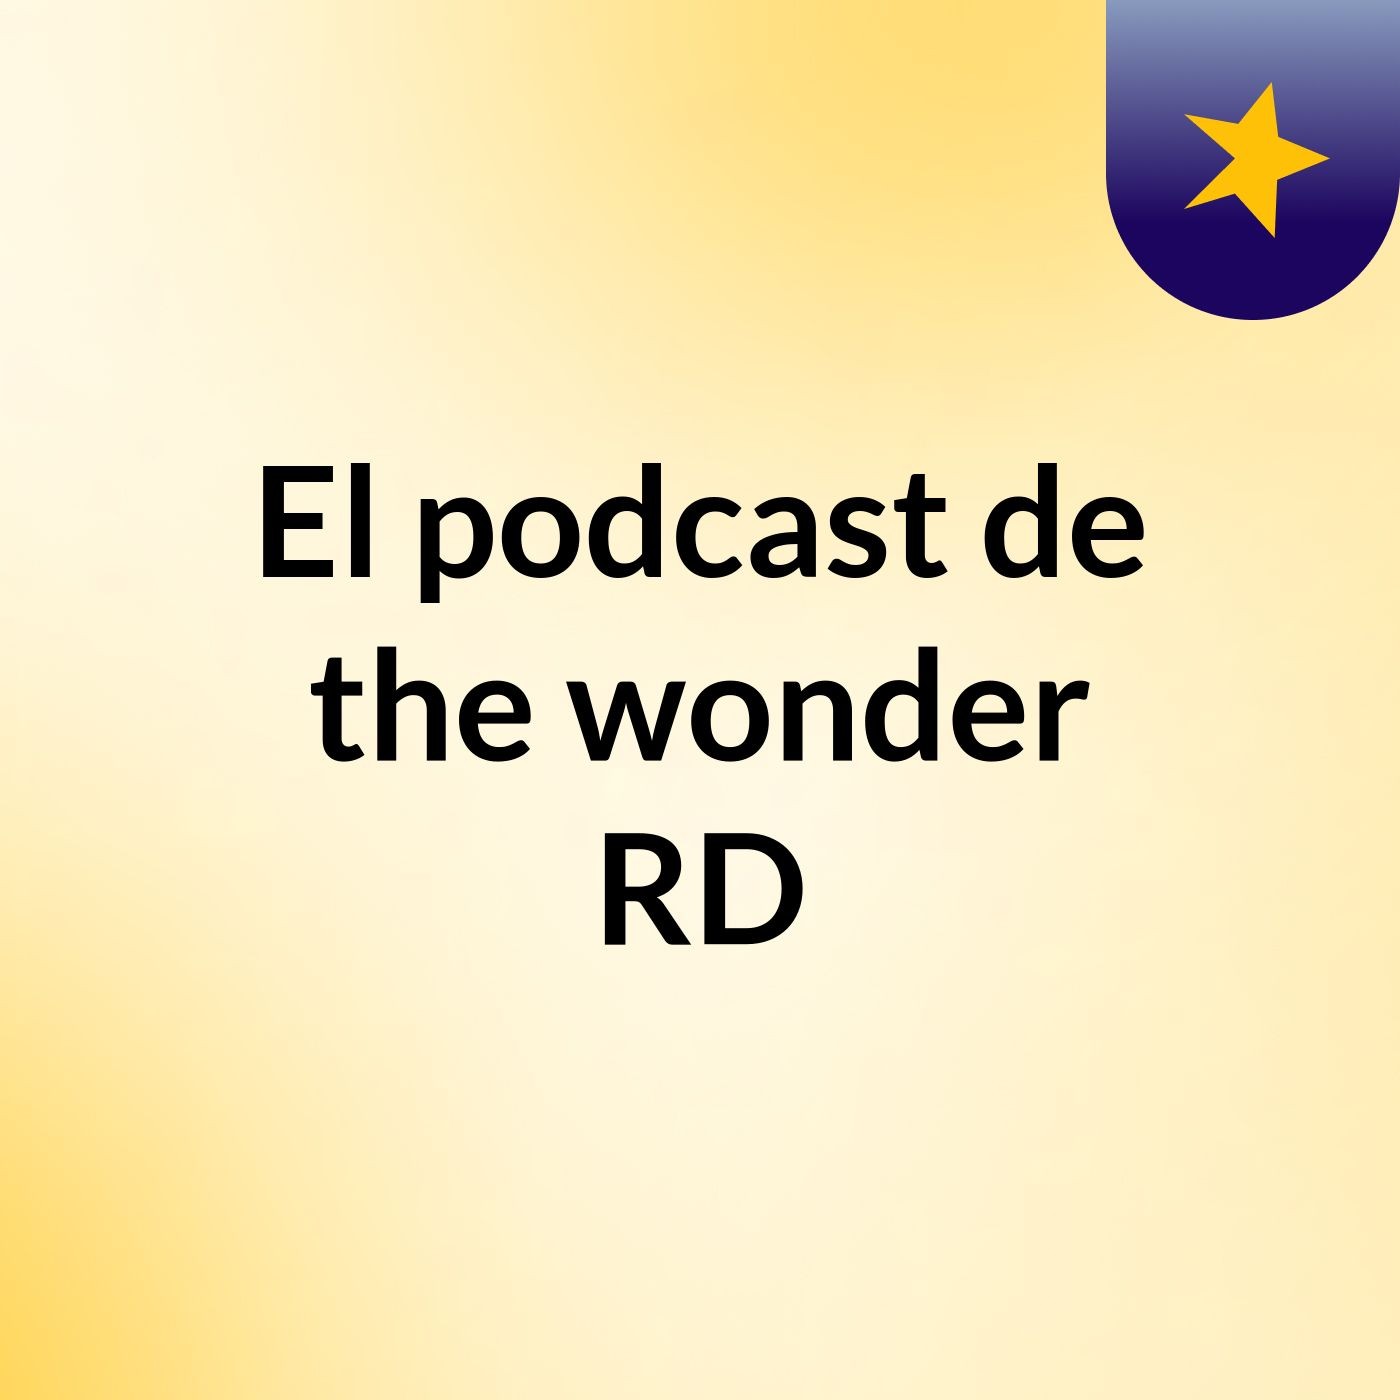 El podcast de the wonder RD